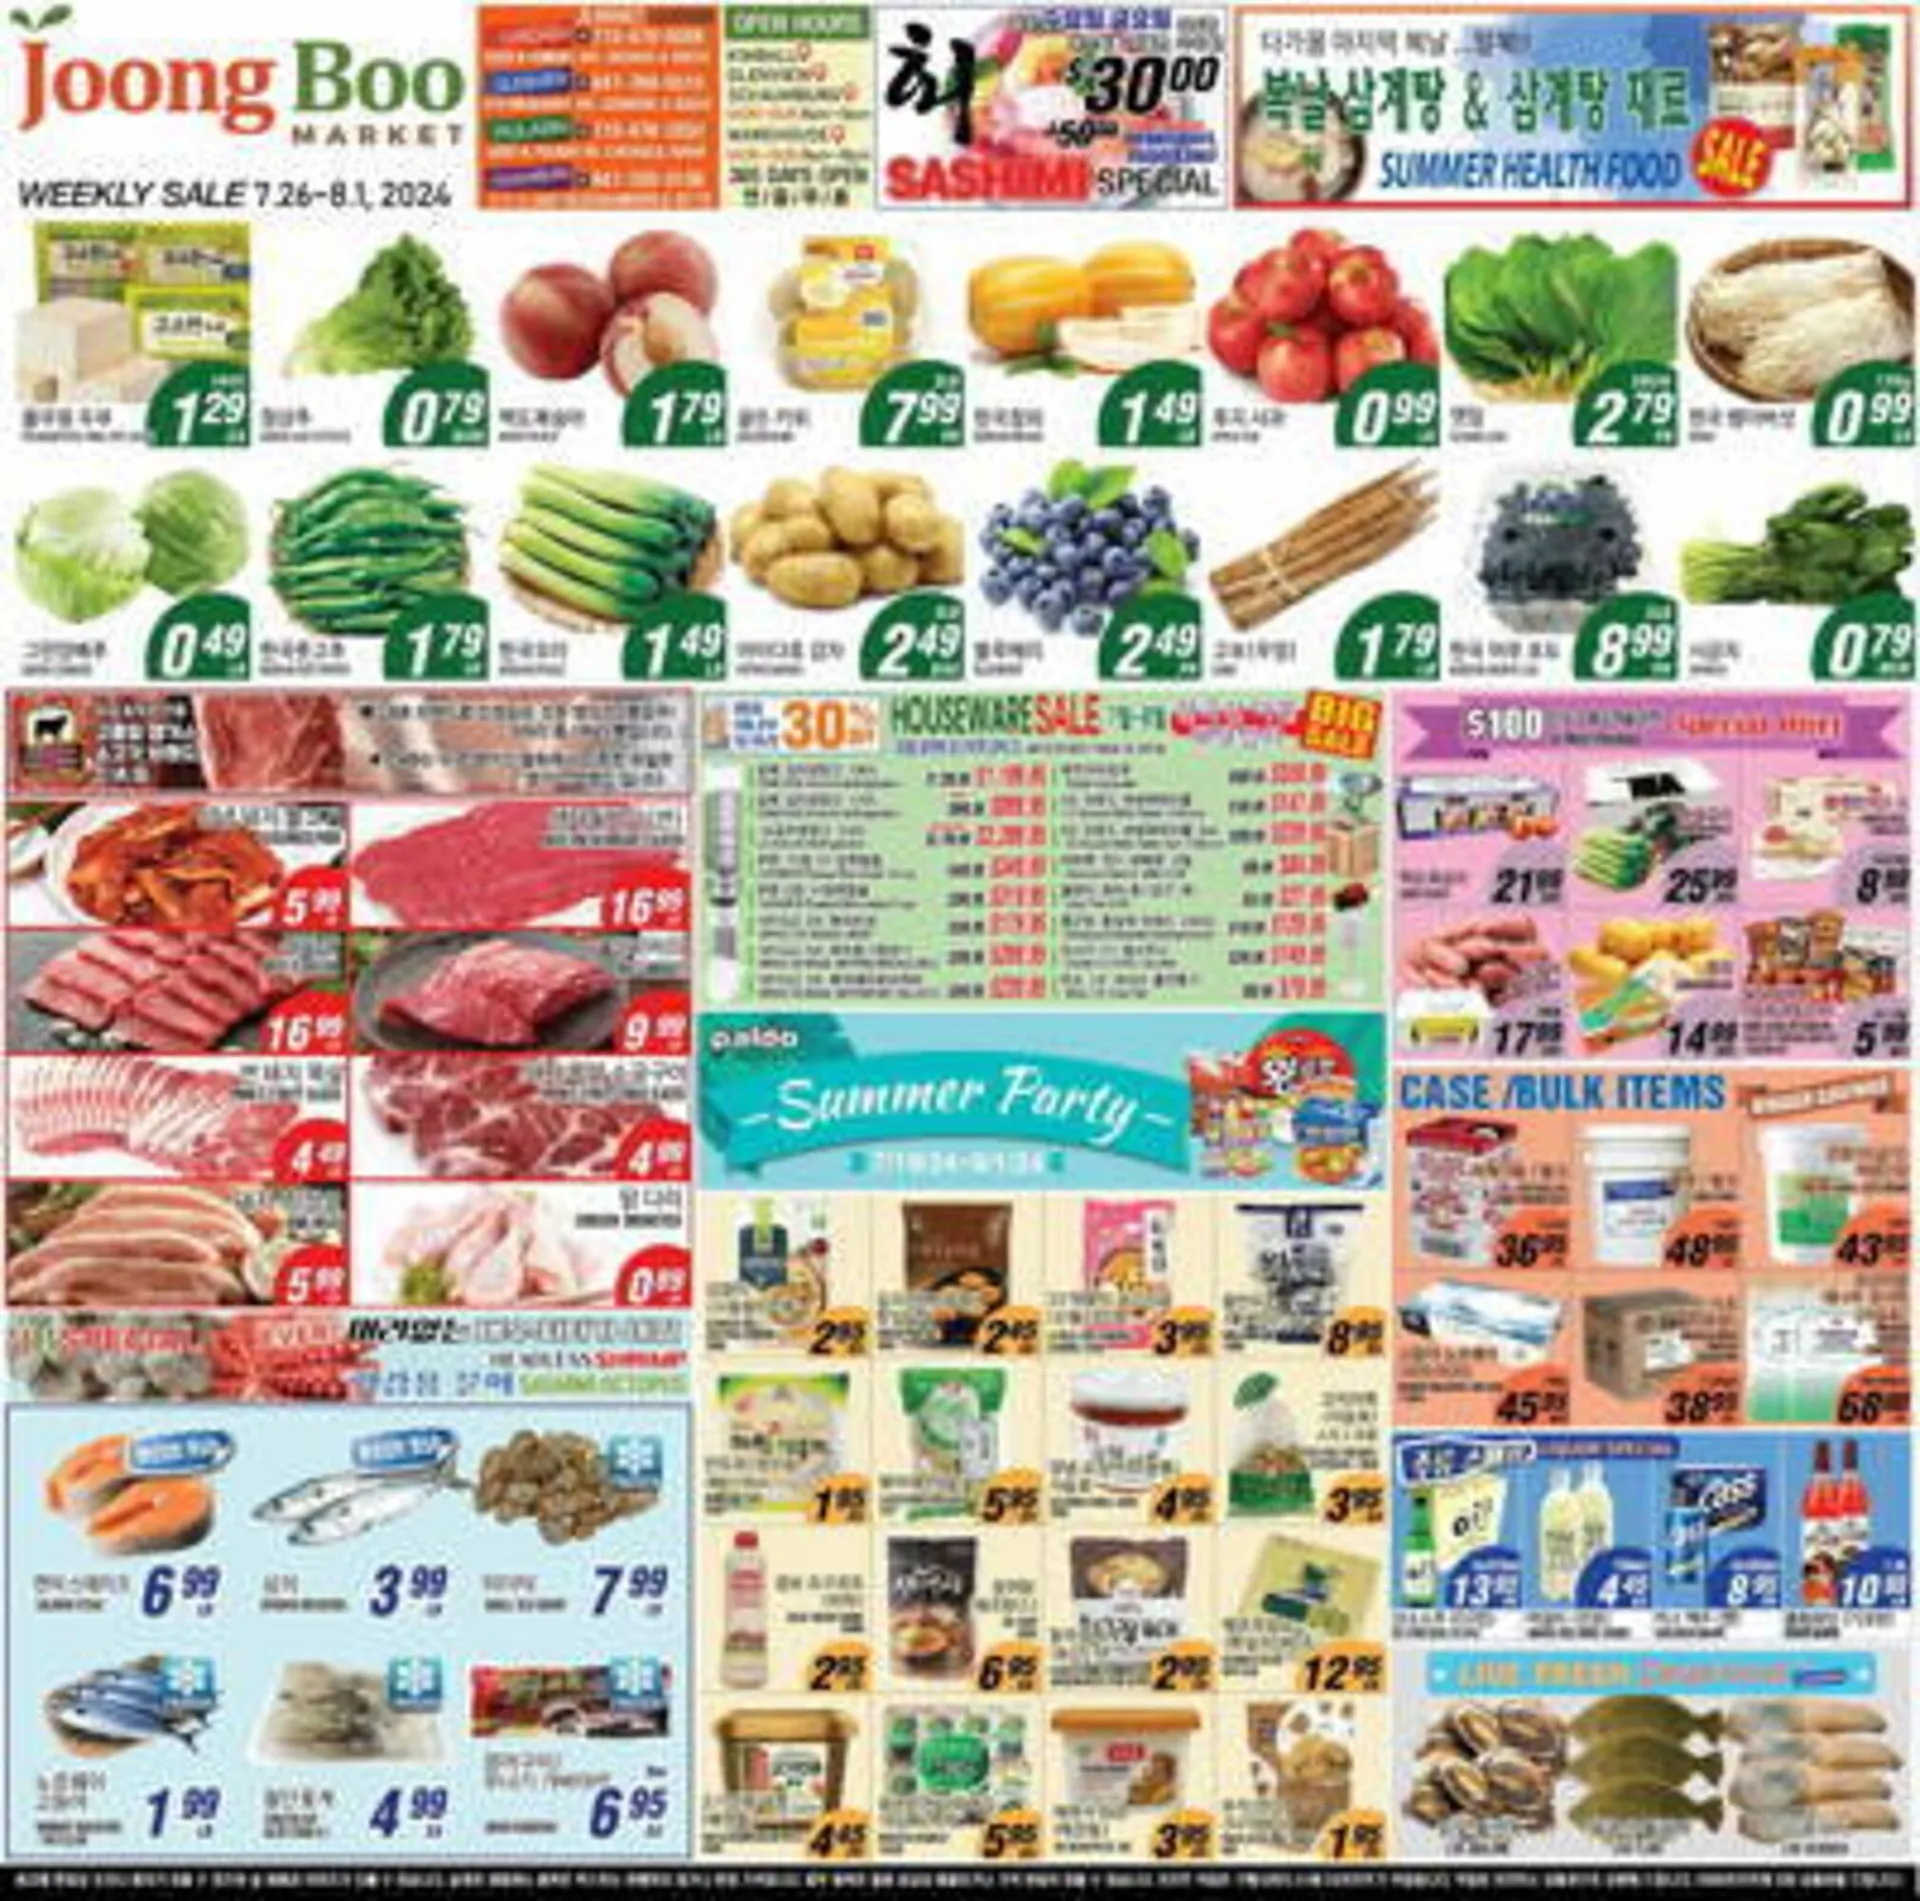 Joong Boo Market Weekly Ad - 1